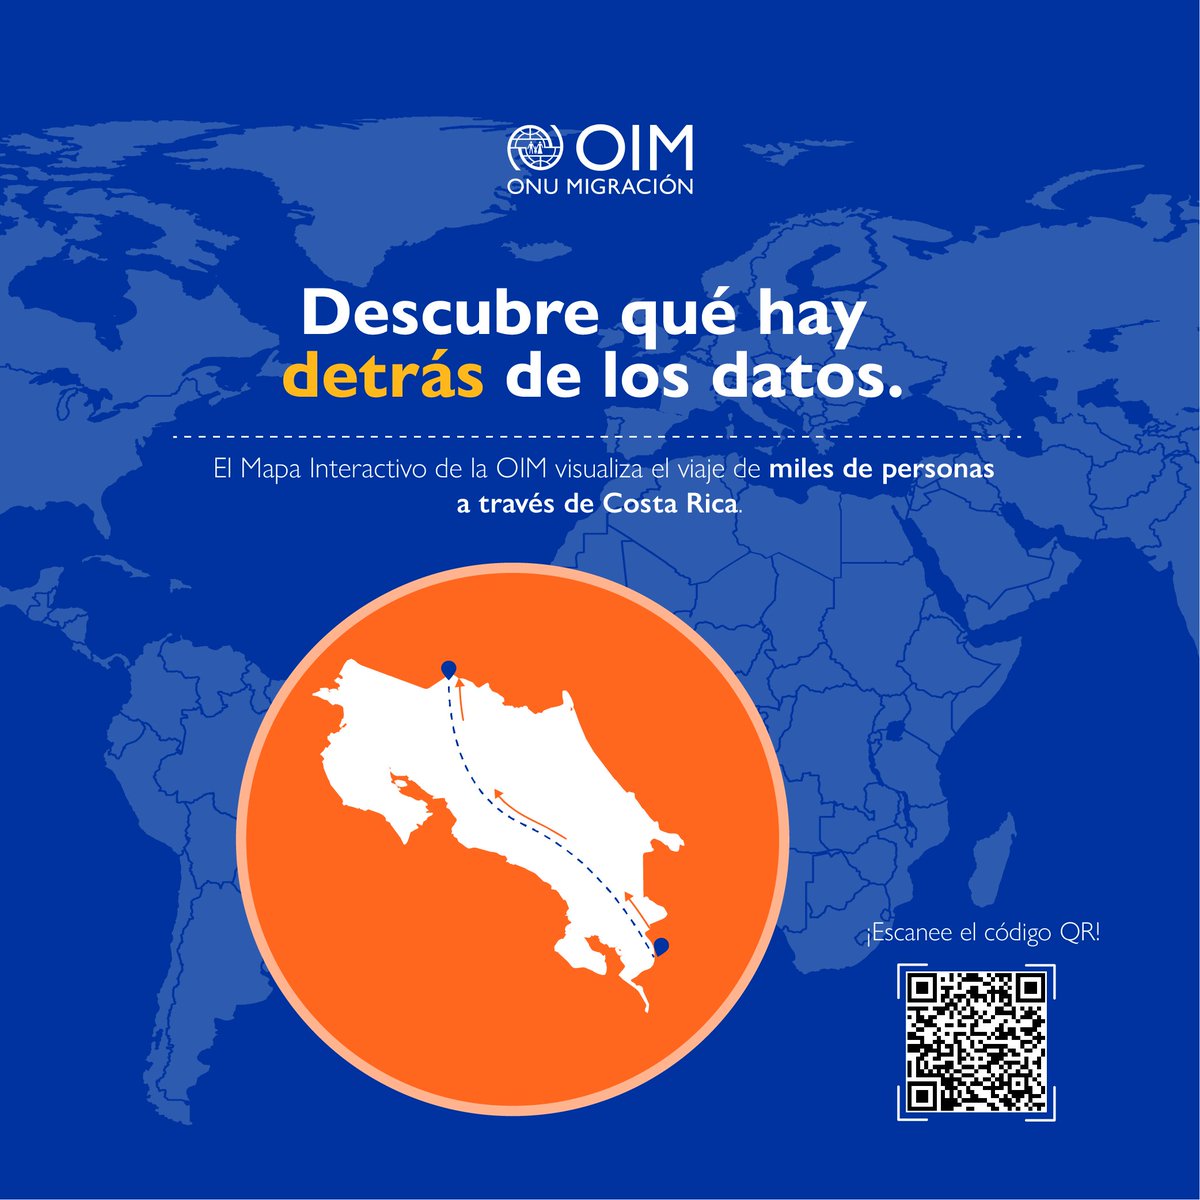 ¿Alguna vez se ha preguntado cómo se visualiza la #migración en Costa Rica? 🤔🇨🇷 .@OIMCostaRica ha creado un #MapaInteractivo 🗺️ que le permite explorar #datos y #tendencias 📈 migratorias de manera ágil y sencilla. ¡Ingrese ahora y descubra más! 👇 bit.ly/3Jn2ULd